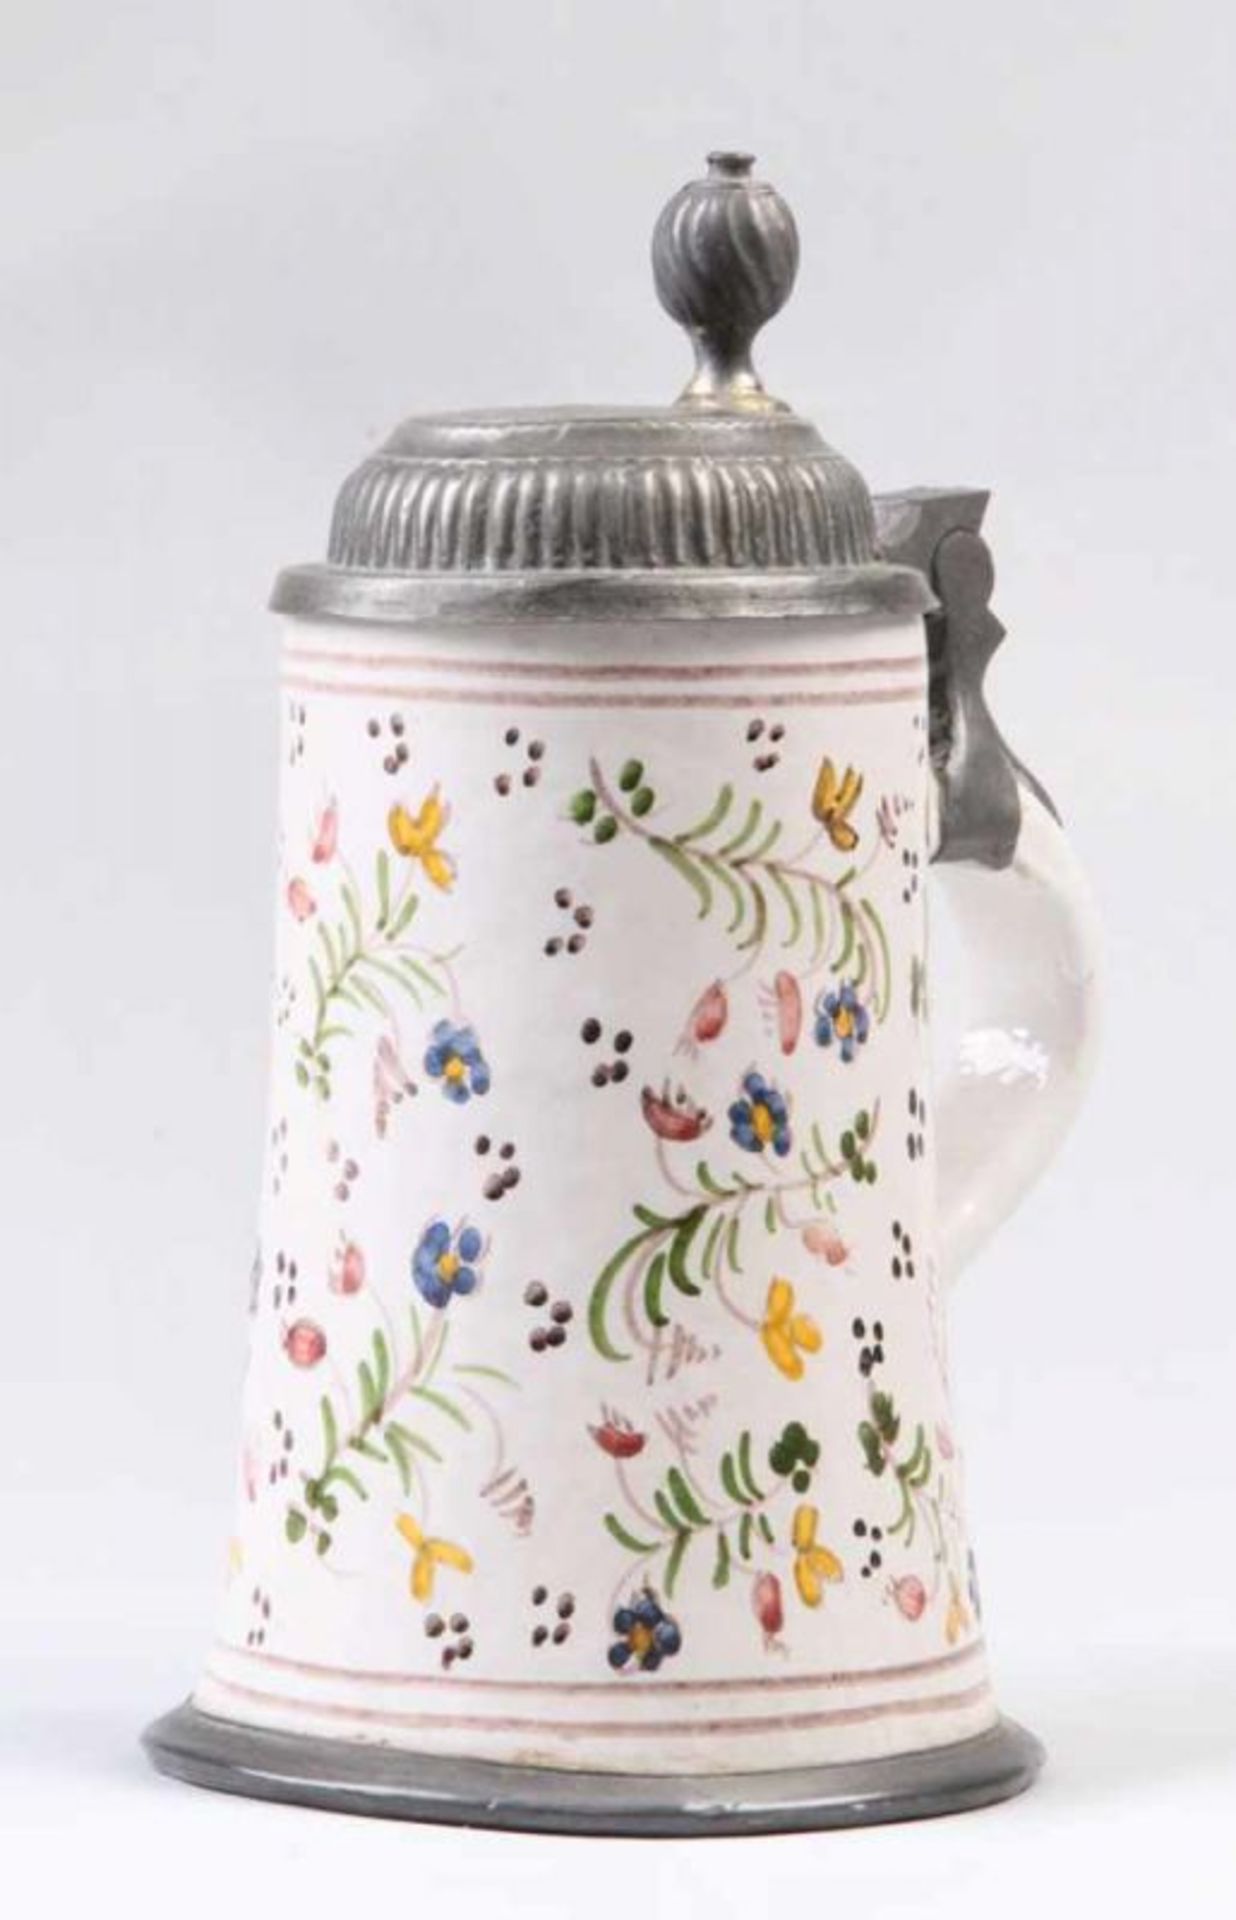 Walzenkrug.20. Jh. Keramik. Dekoriert mit stilisierten Blüten. Zinnmontur. H: 22 cm. 20.00 % buyer's